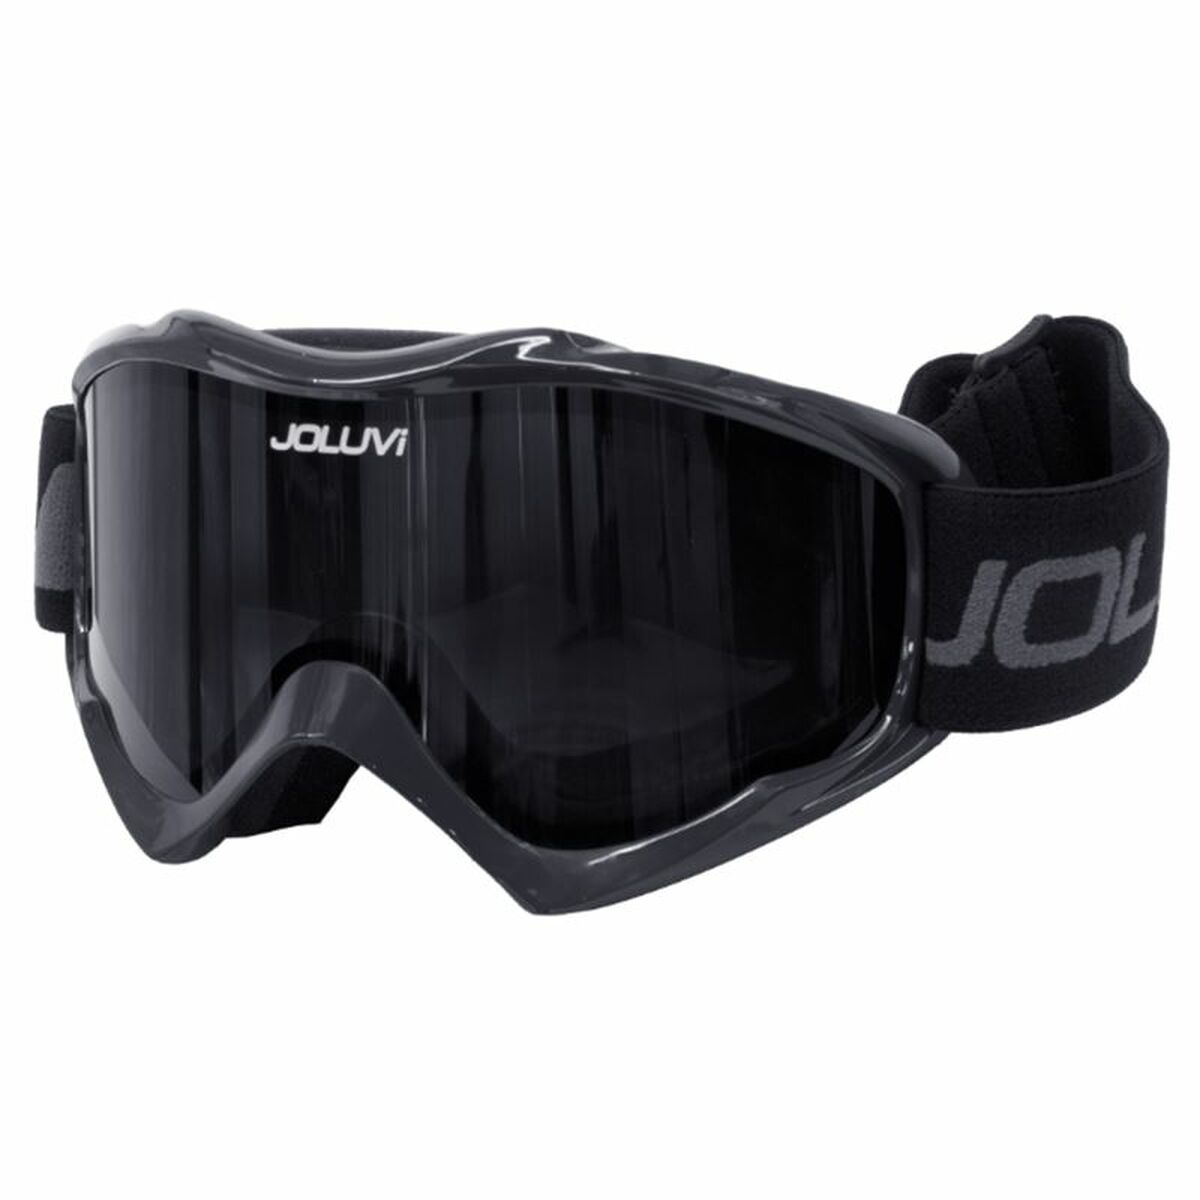 Lunettes de ski Joluvi Mask Noir